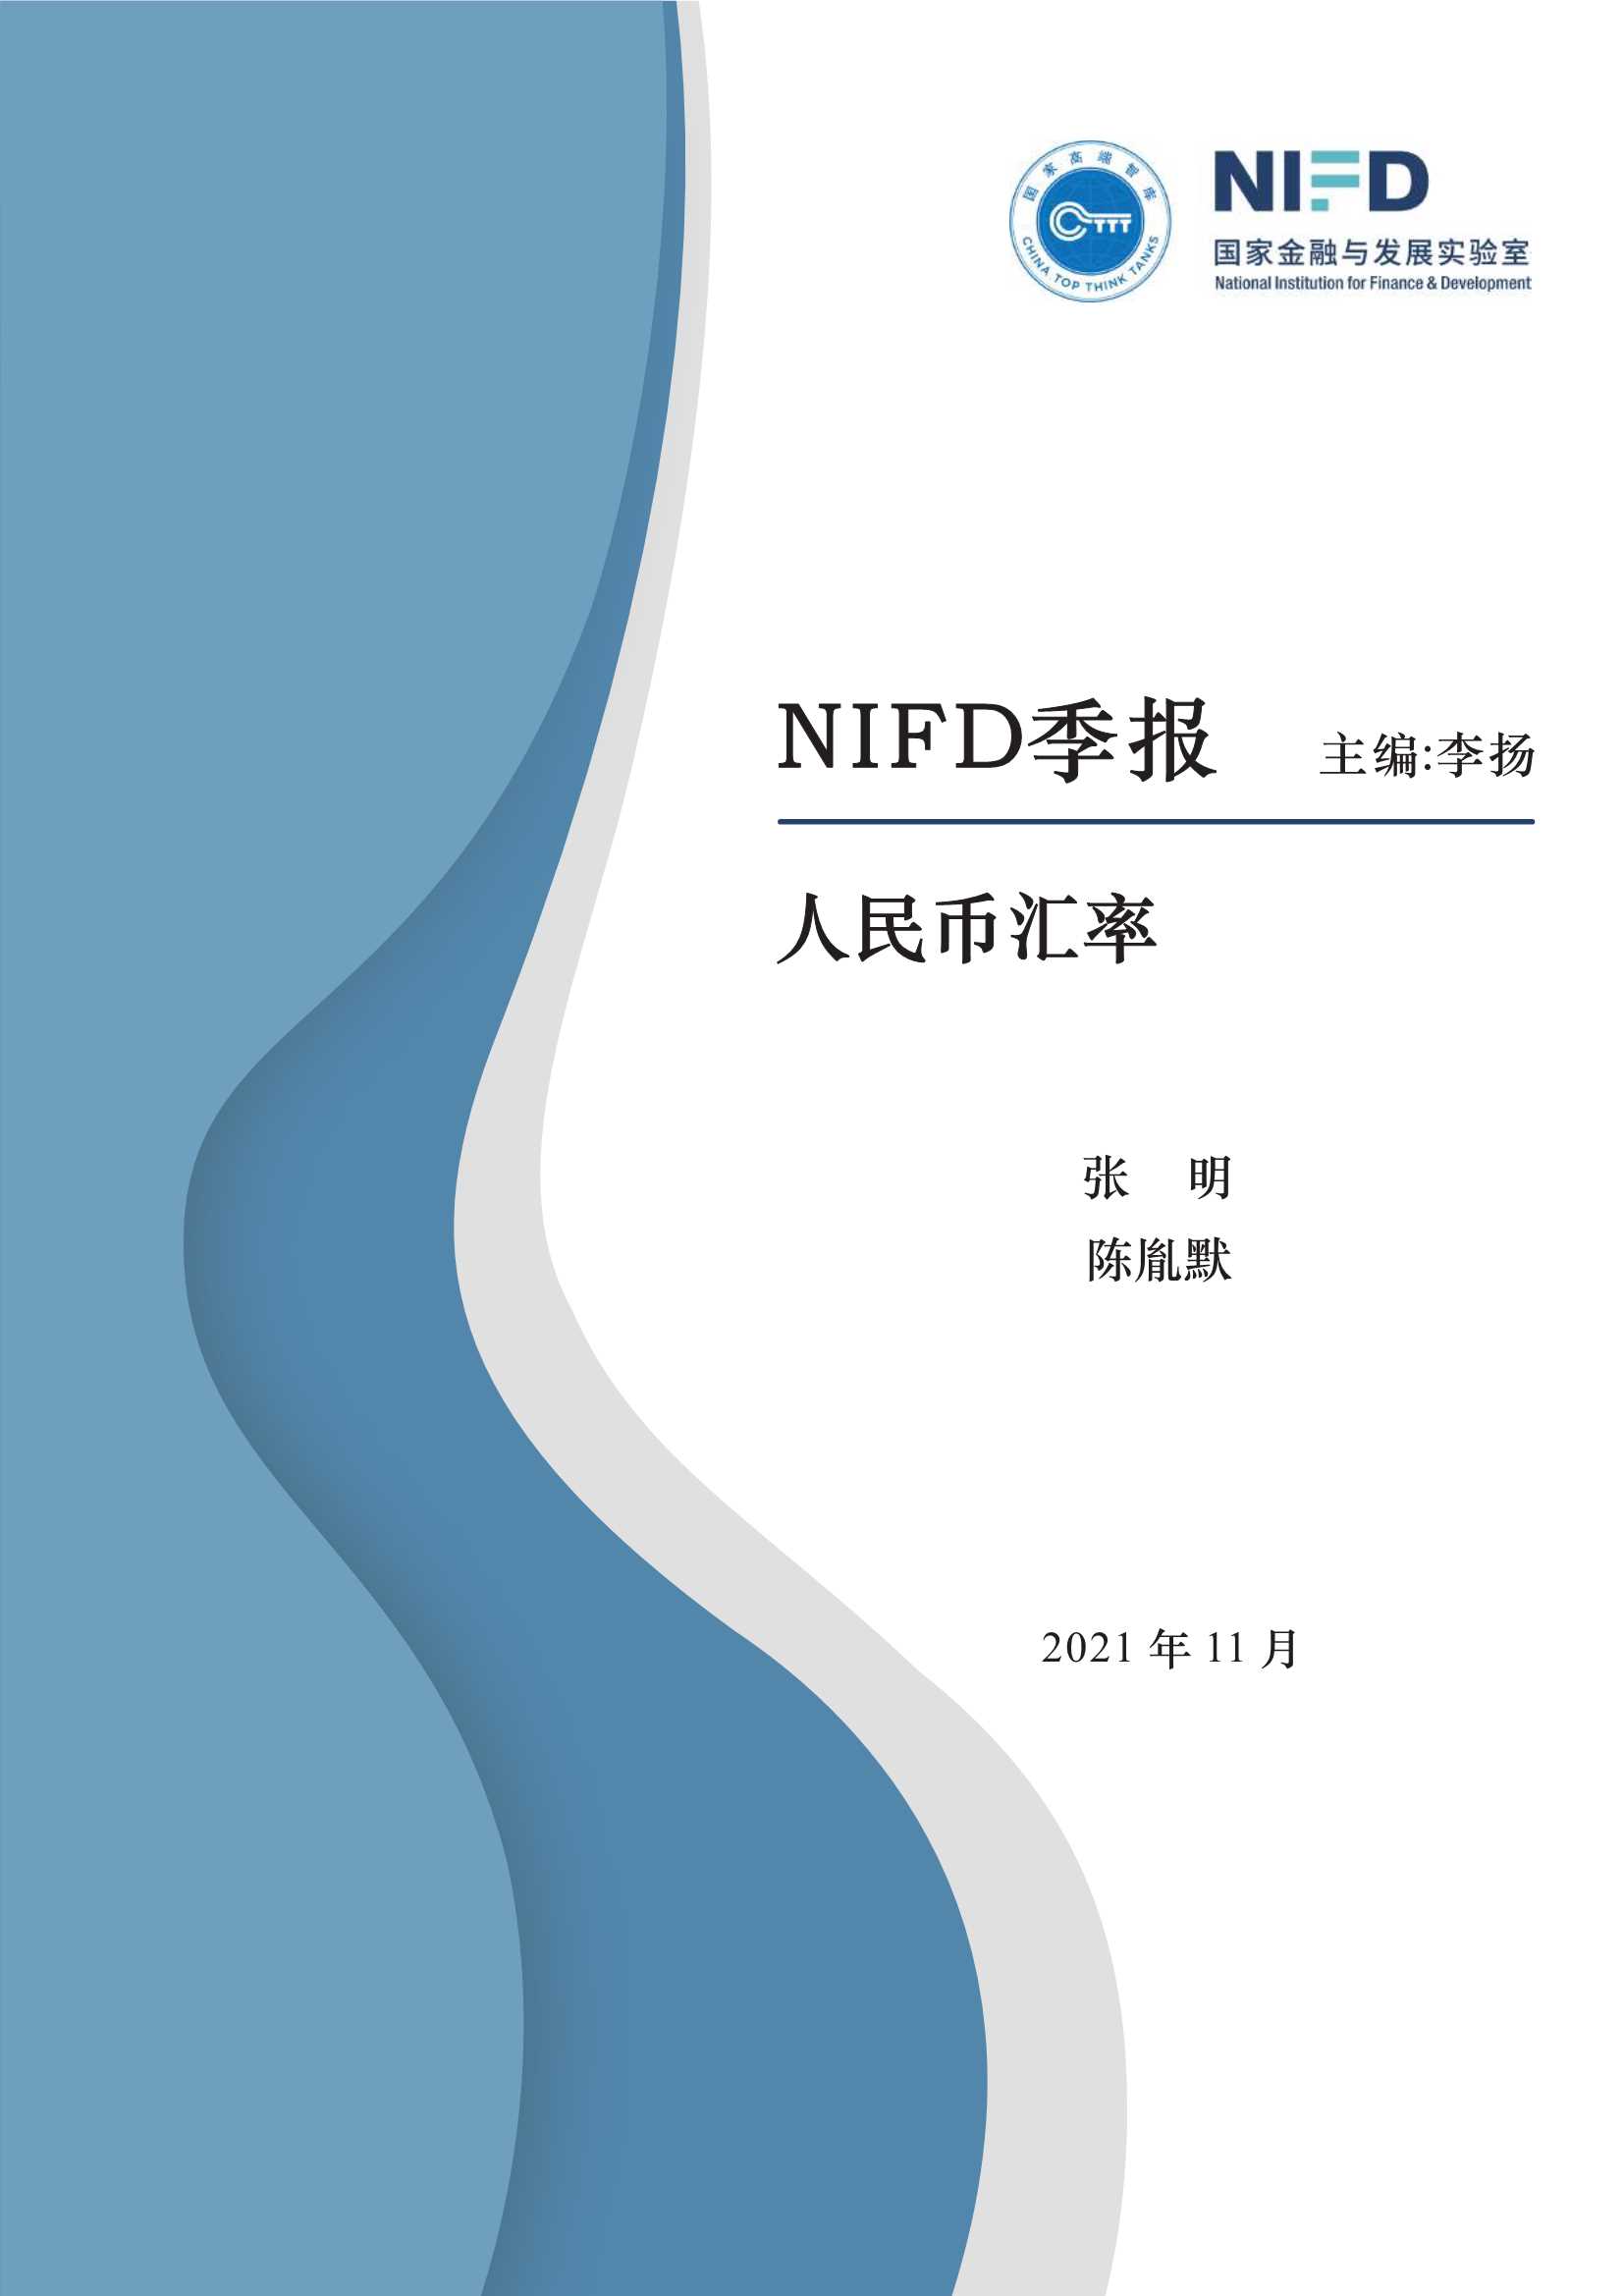 NIFD-2021Q3人民币汇率-2021.11-14页